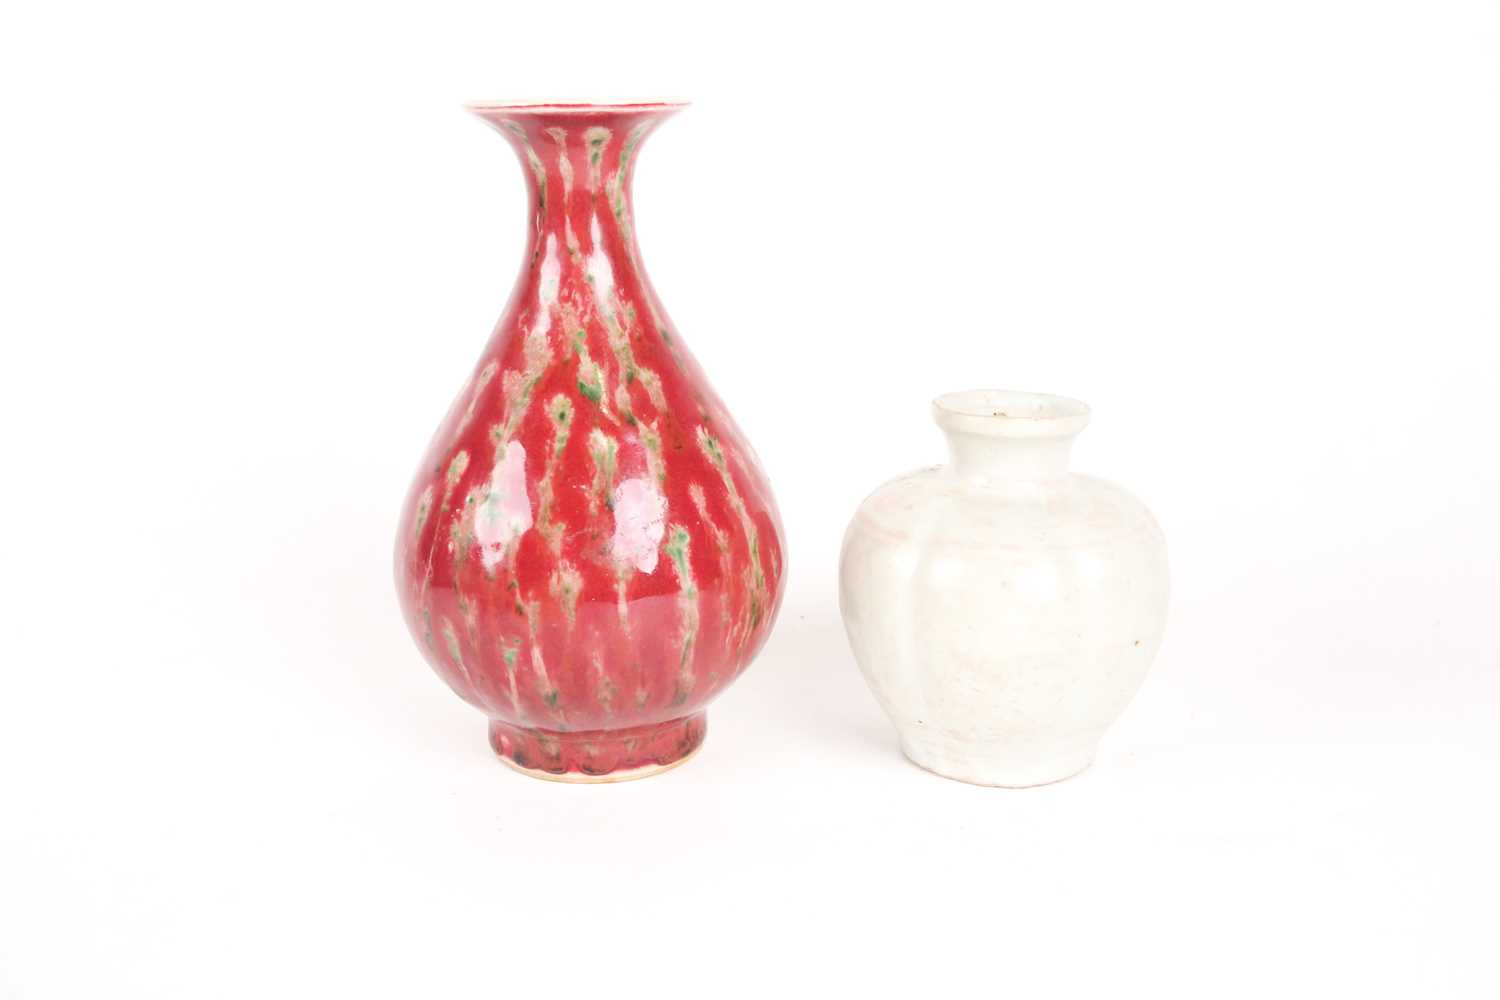 A Chinese white glazed segmented globular vase, Song dynasty, painted with underglaze red decoration - Image 5 of 6